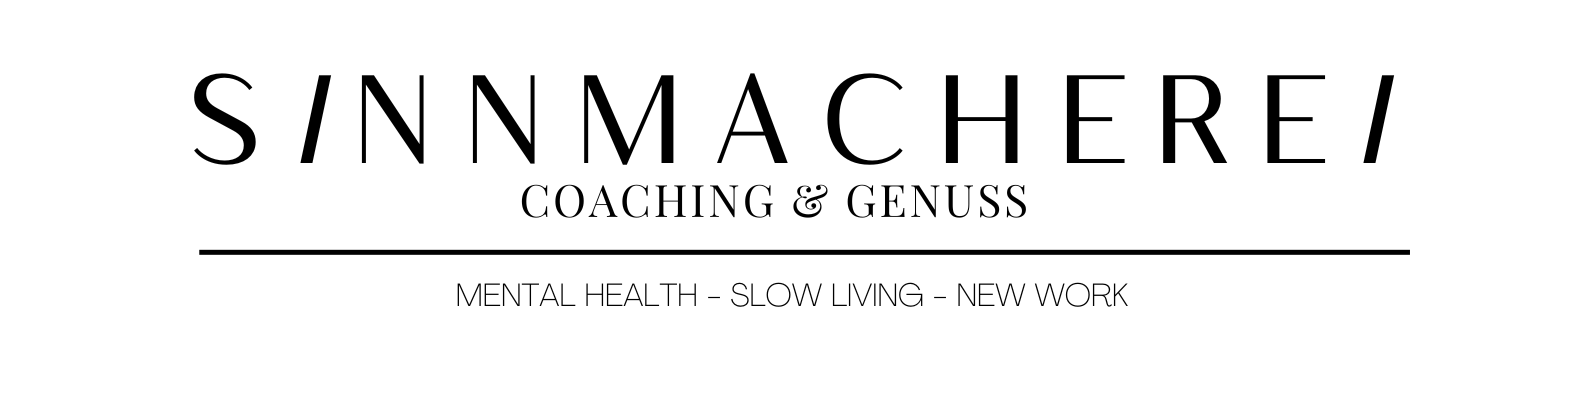 Sinnmacherei- Coaching & Genuss 